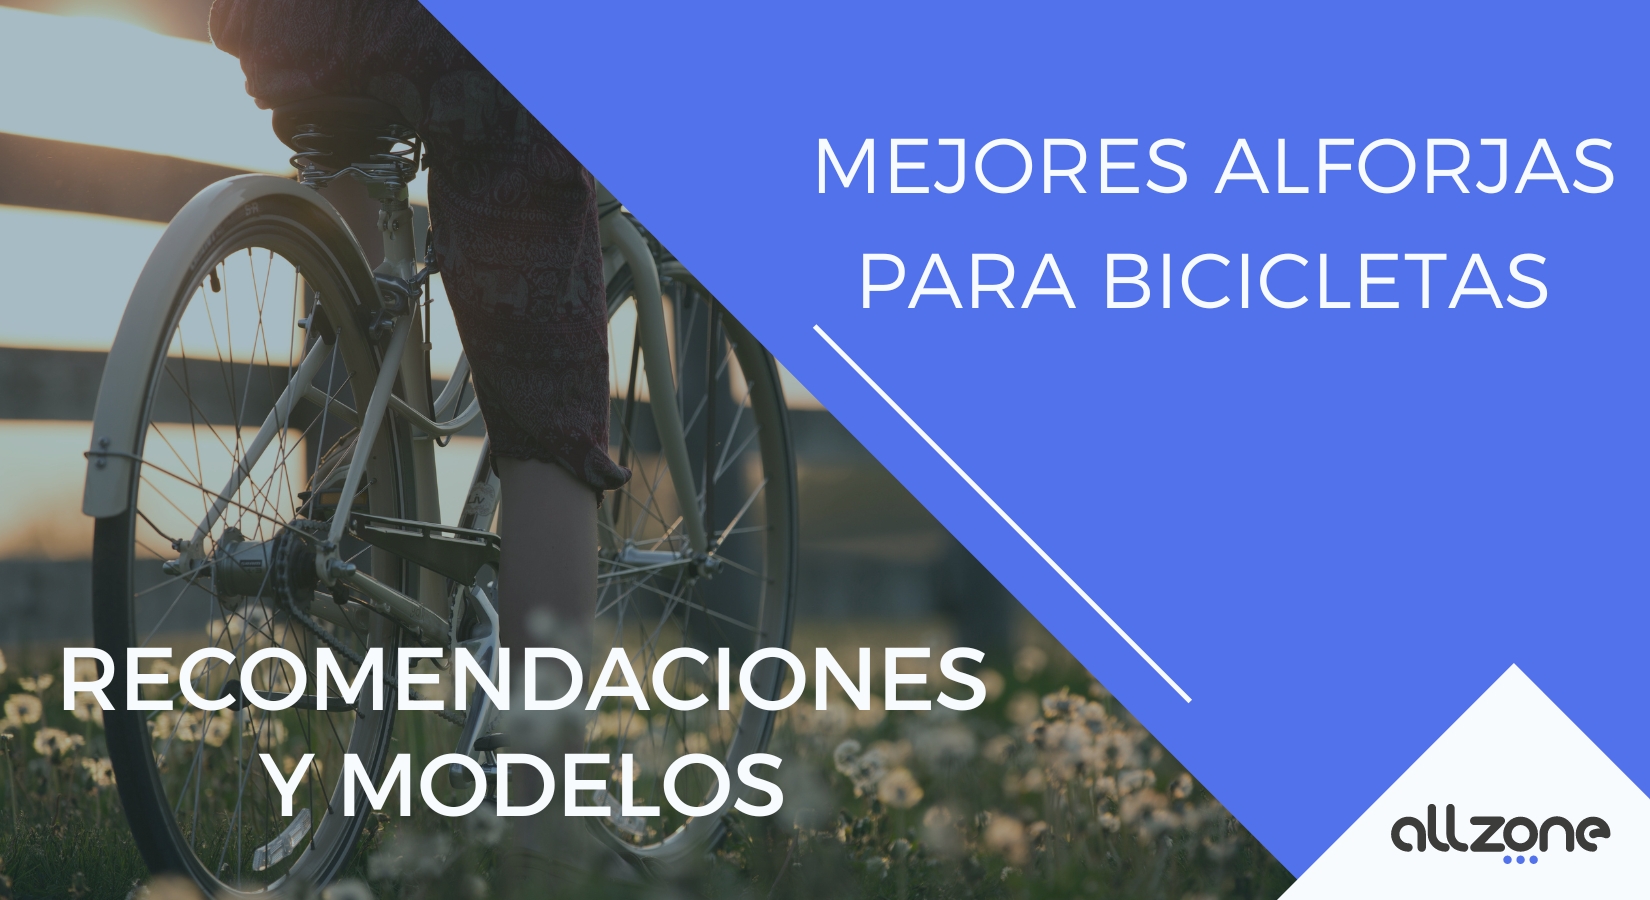 Retrovisores para Bicicleta (Modelos y Recomendaciones) - Con Alforjas